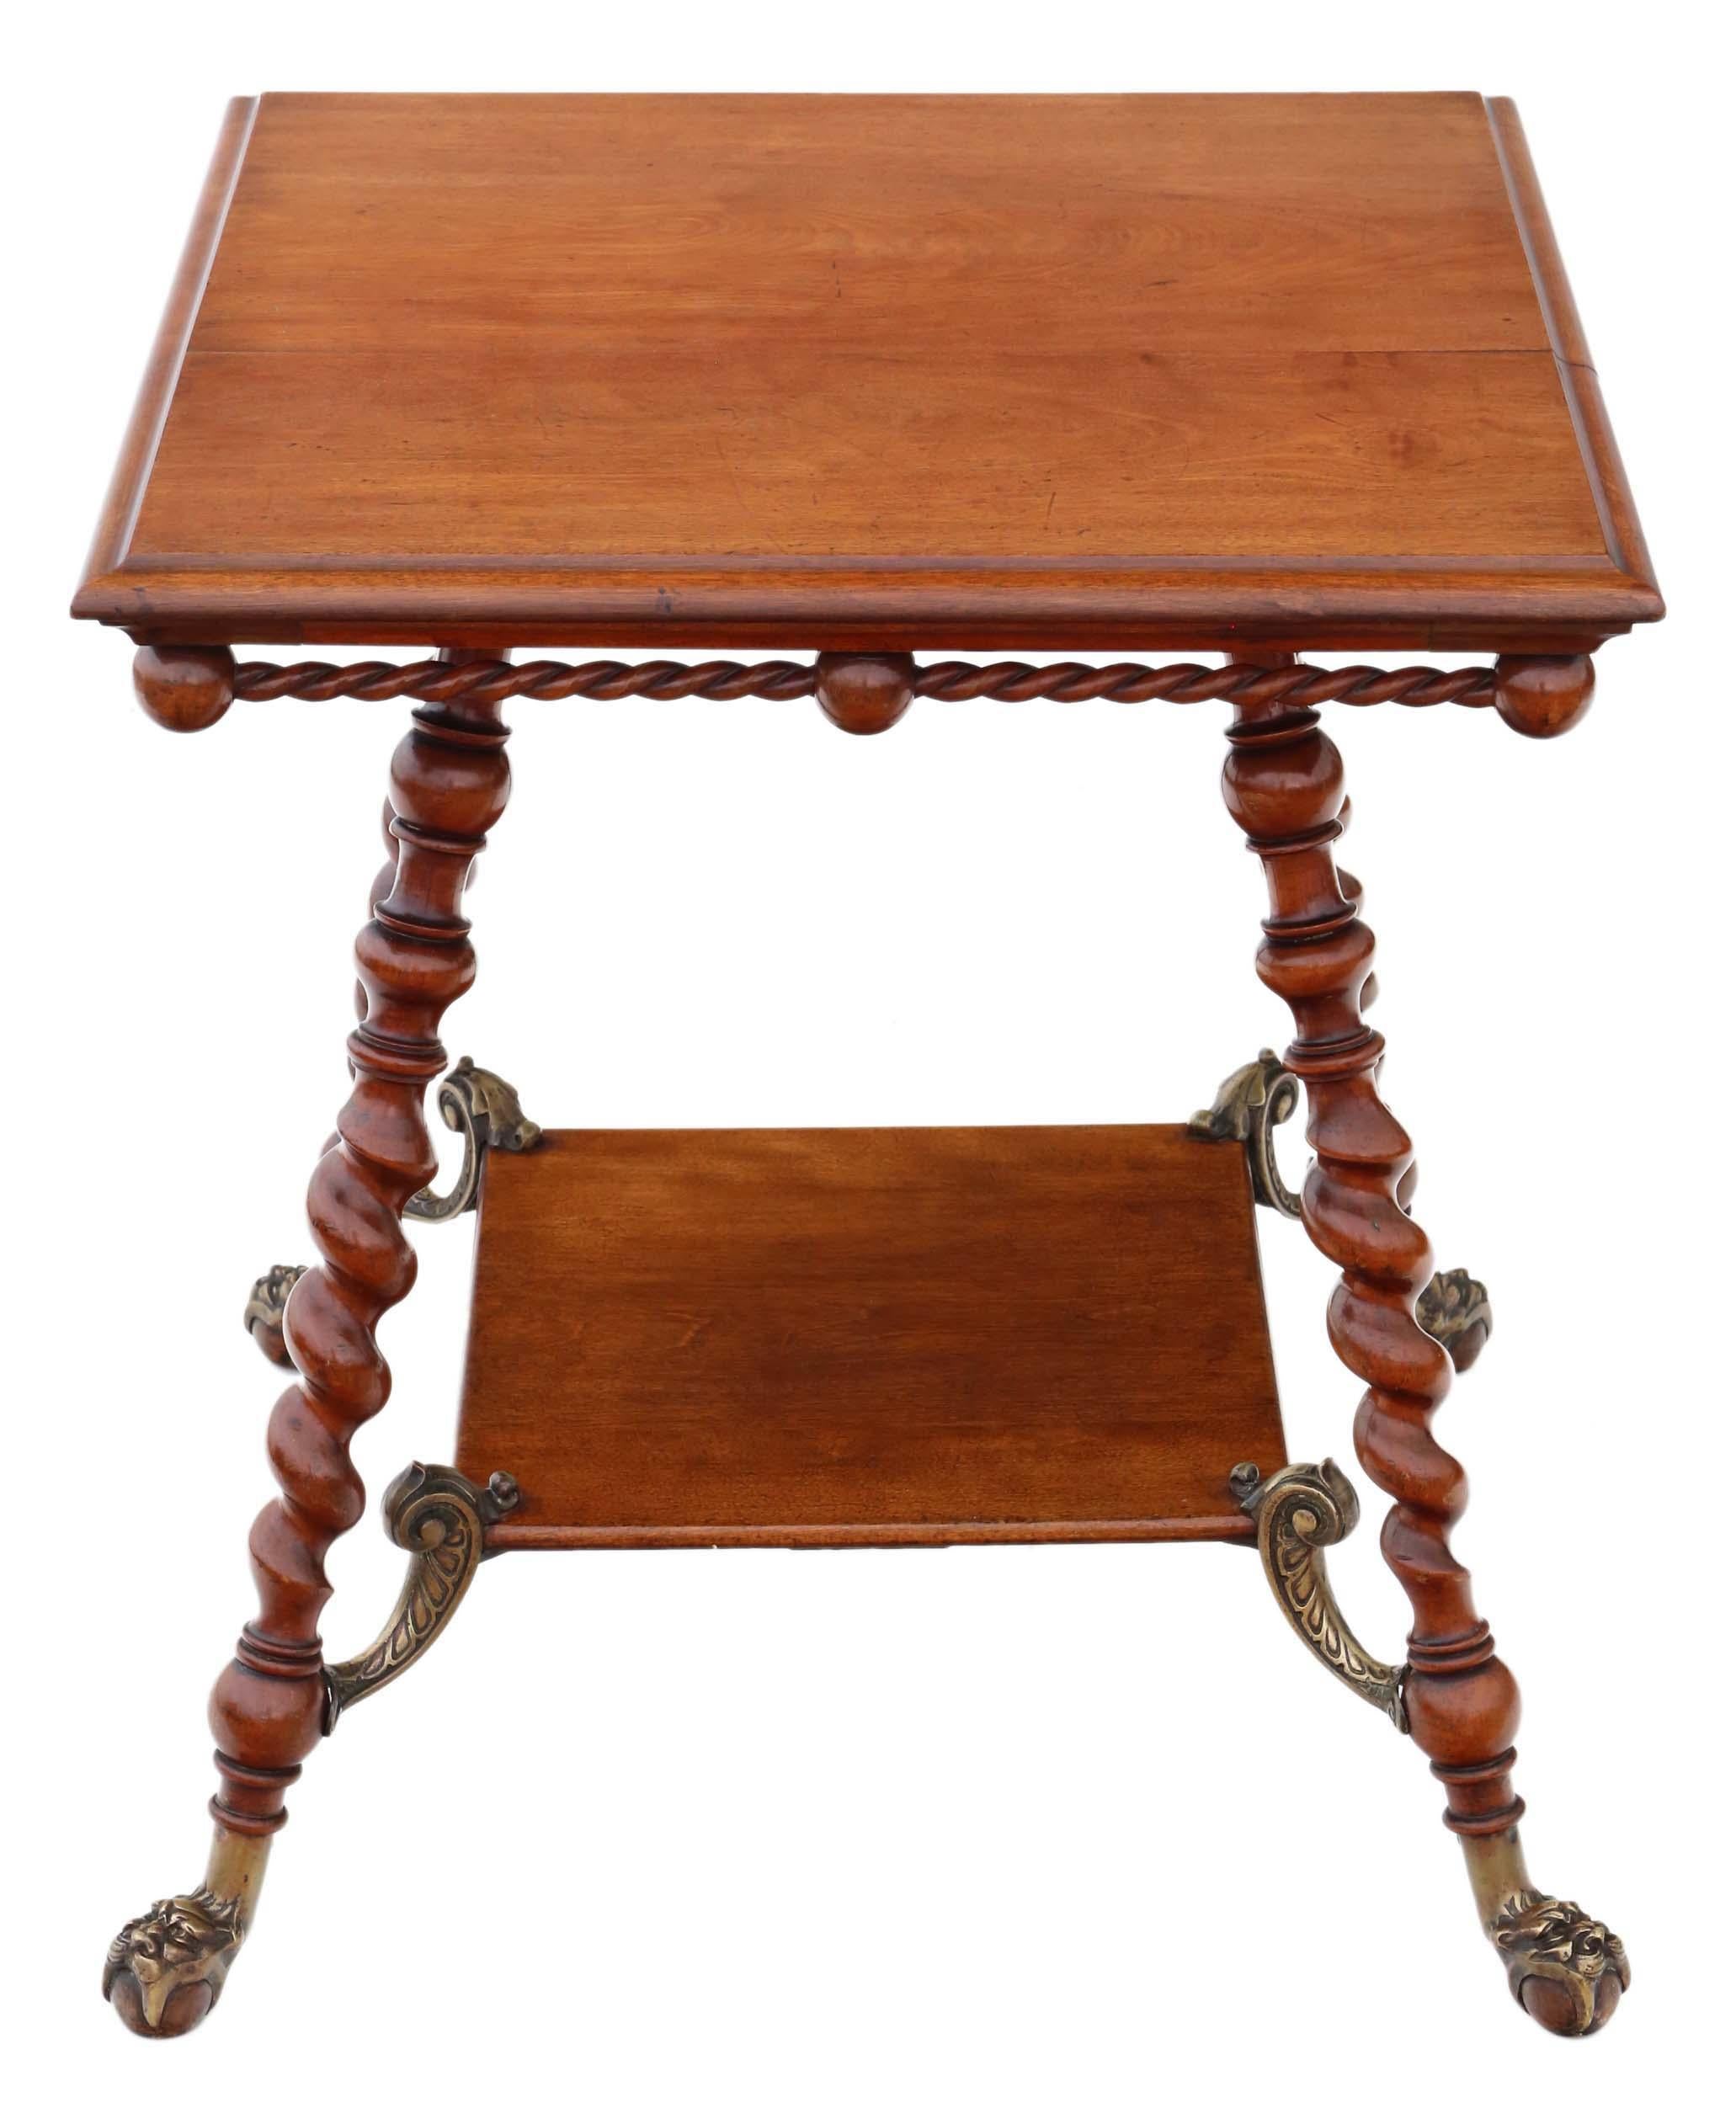 Antiker und äußerst seltener viktorianischer Mitteltisch aus der Zeit um 1880-1900, fein gearbeitet aus rotem Nussbaum und mit Messingakzenten verziert.

Dieser Tisch ist solide und gewichtig und weist keine losen Verbindungen auf. Die attraktiven